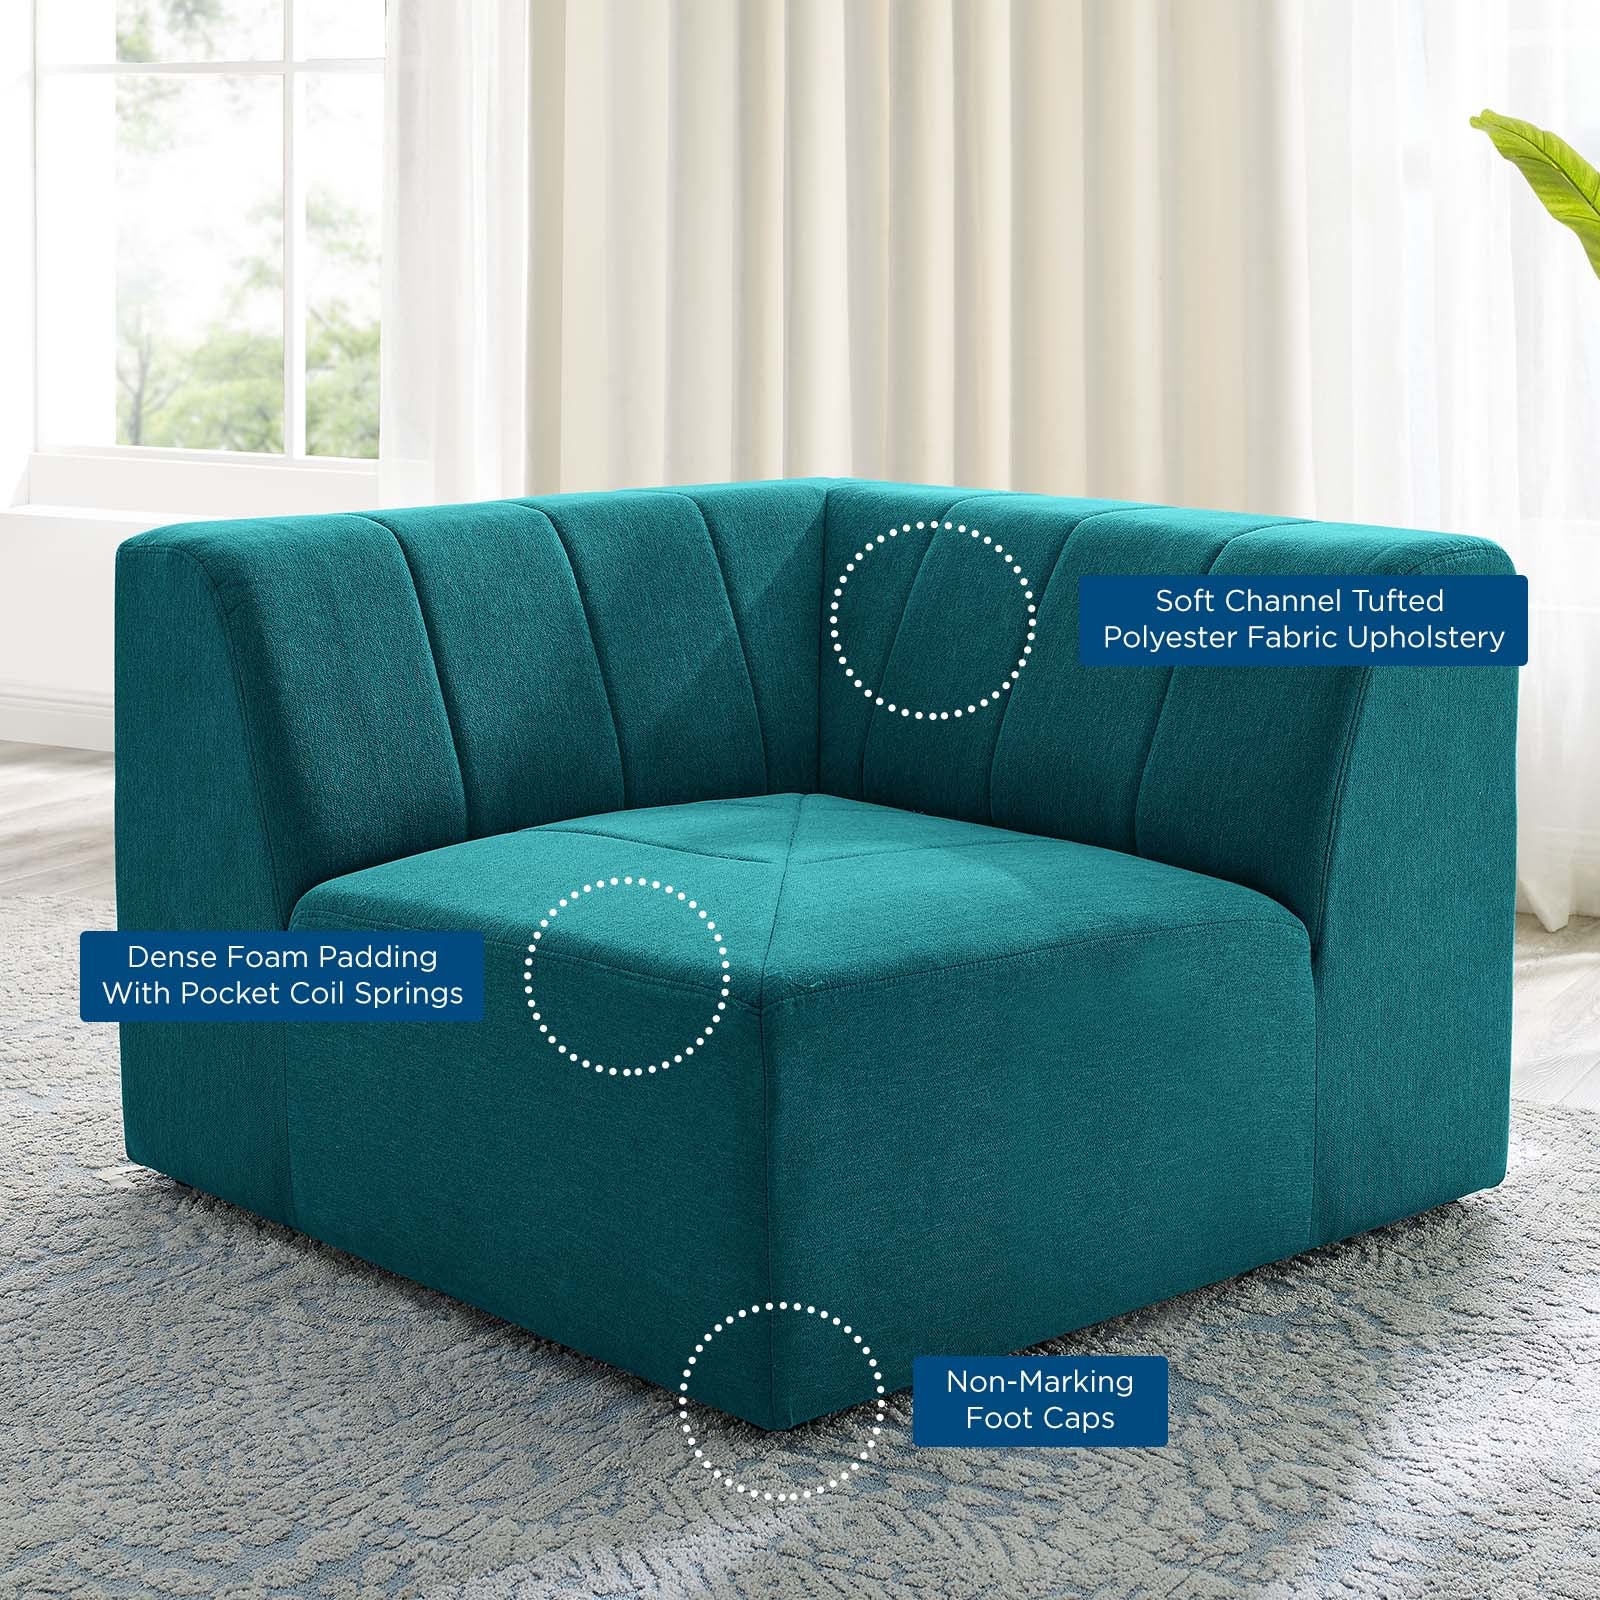 Bartlett Upholstered Fabric Corner Chair - East Shore Modern Home Furnishings